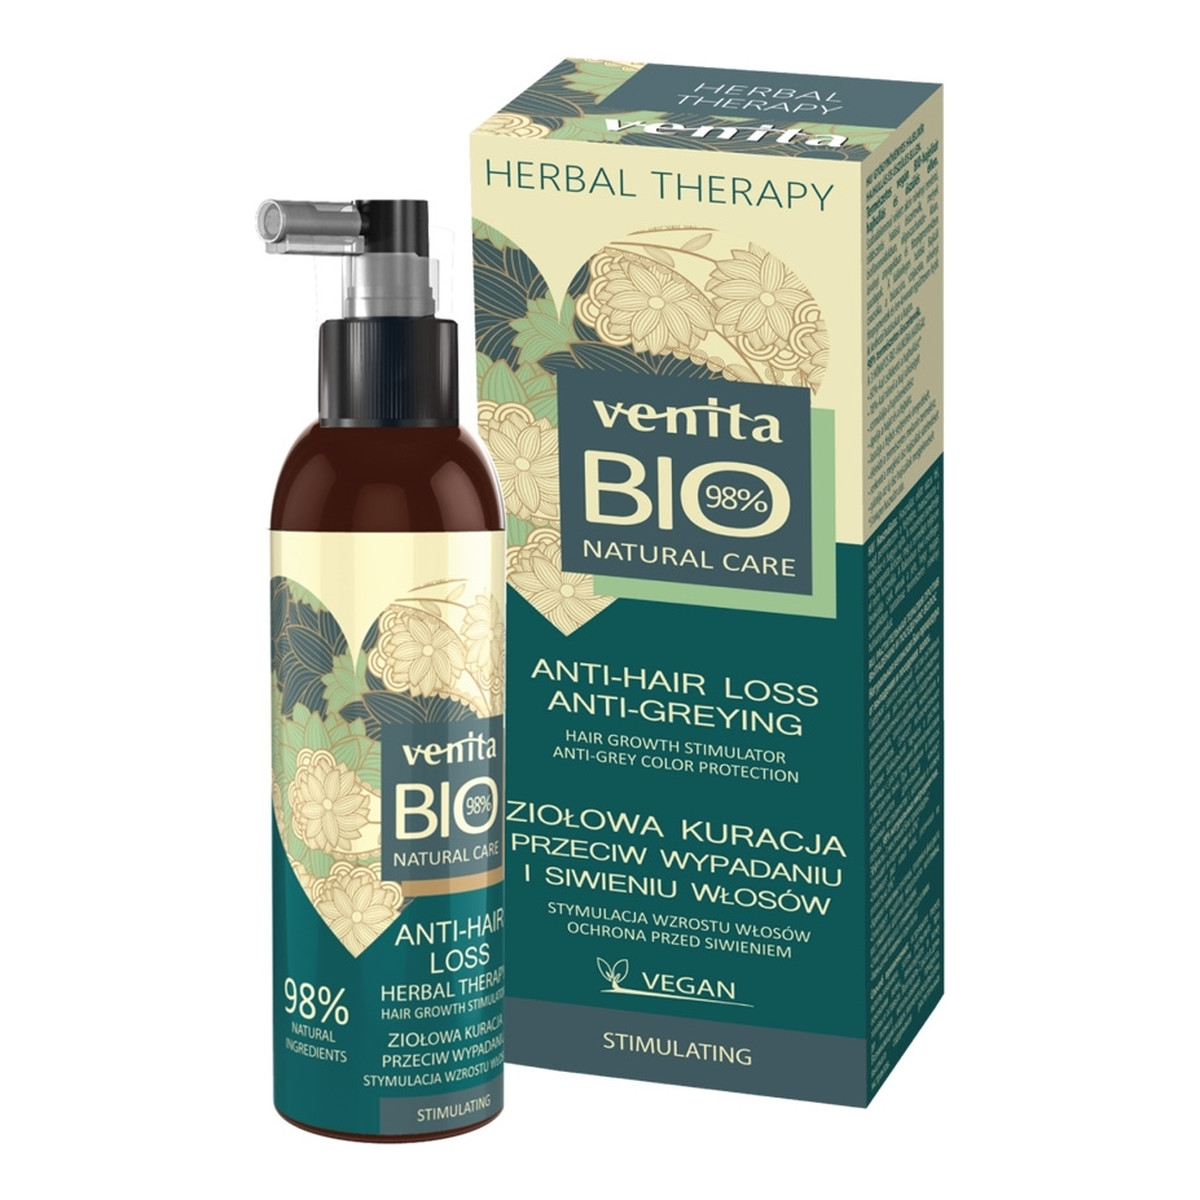 Venita Bio Natural Care Anti Hair Loss ziołowa kuracja przeciw wypadaniu i siwieniu włosów 200ml